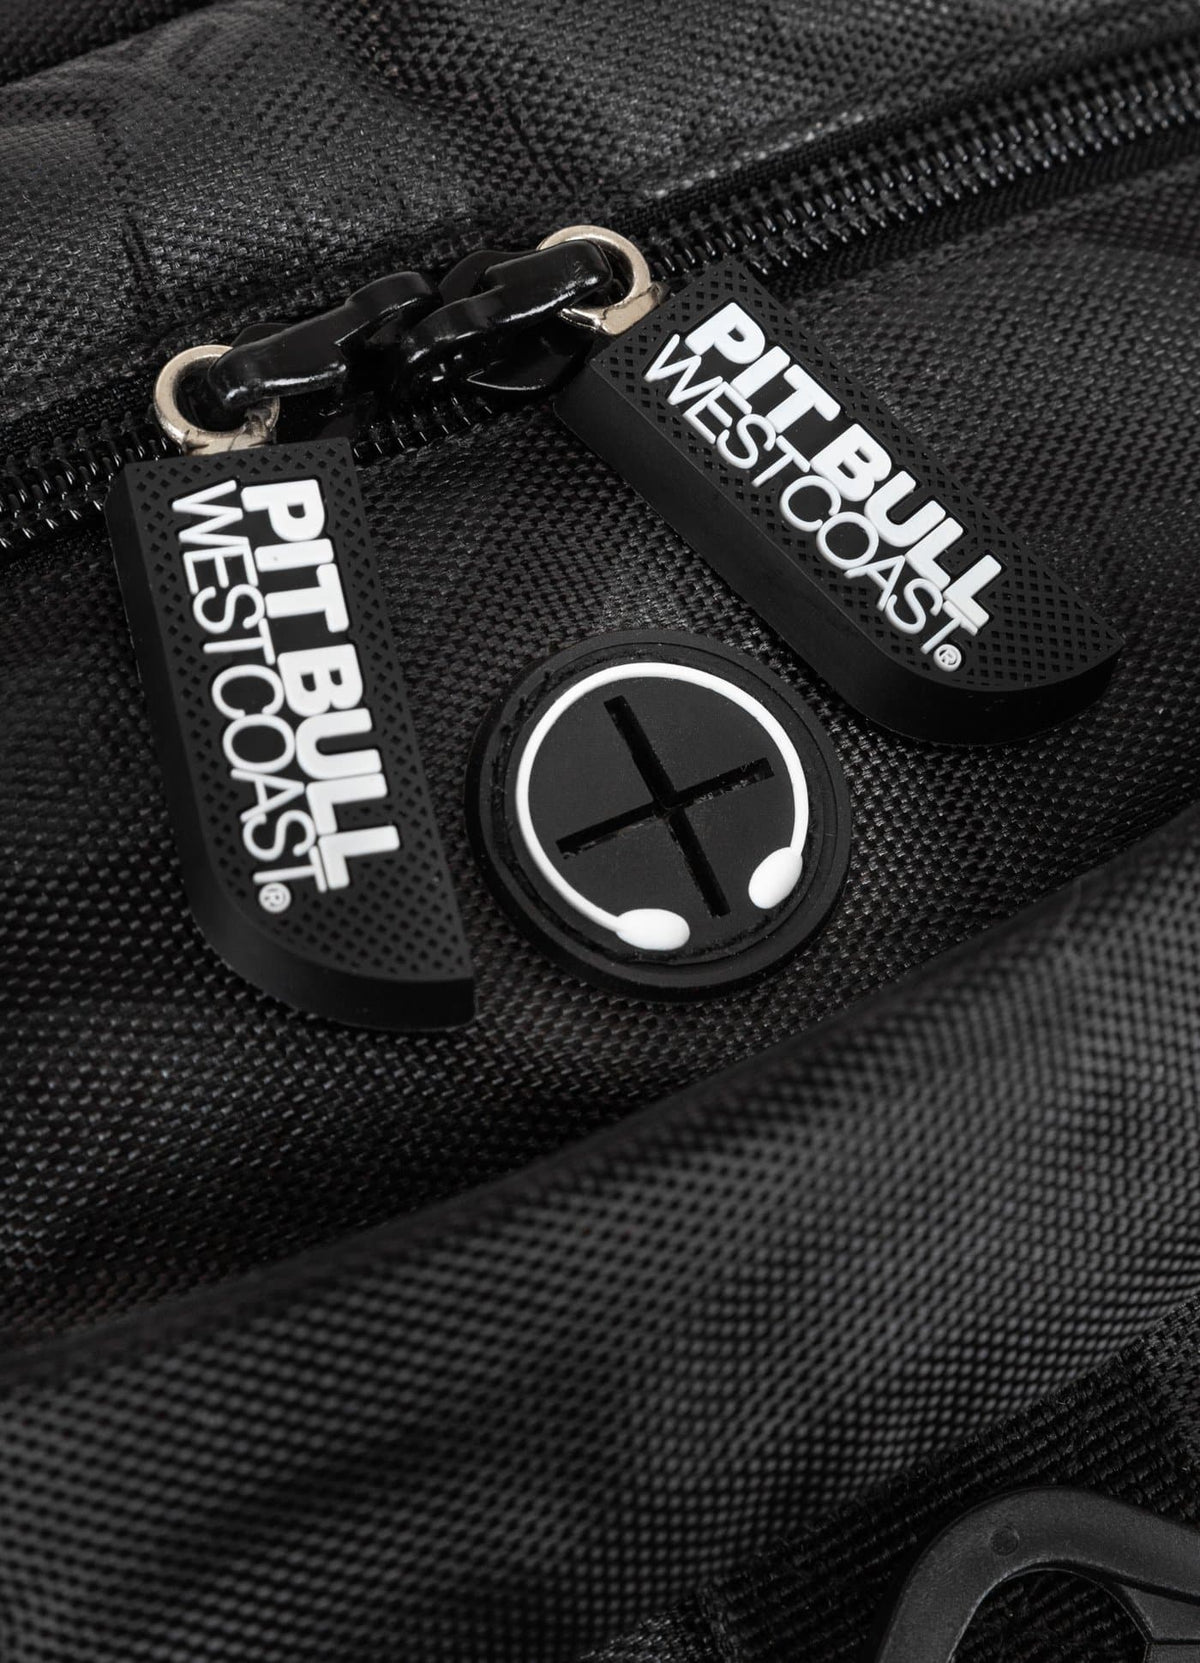 Big Training Backpack ADCC 2021 Black - Pitbull West Coast International Store 